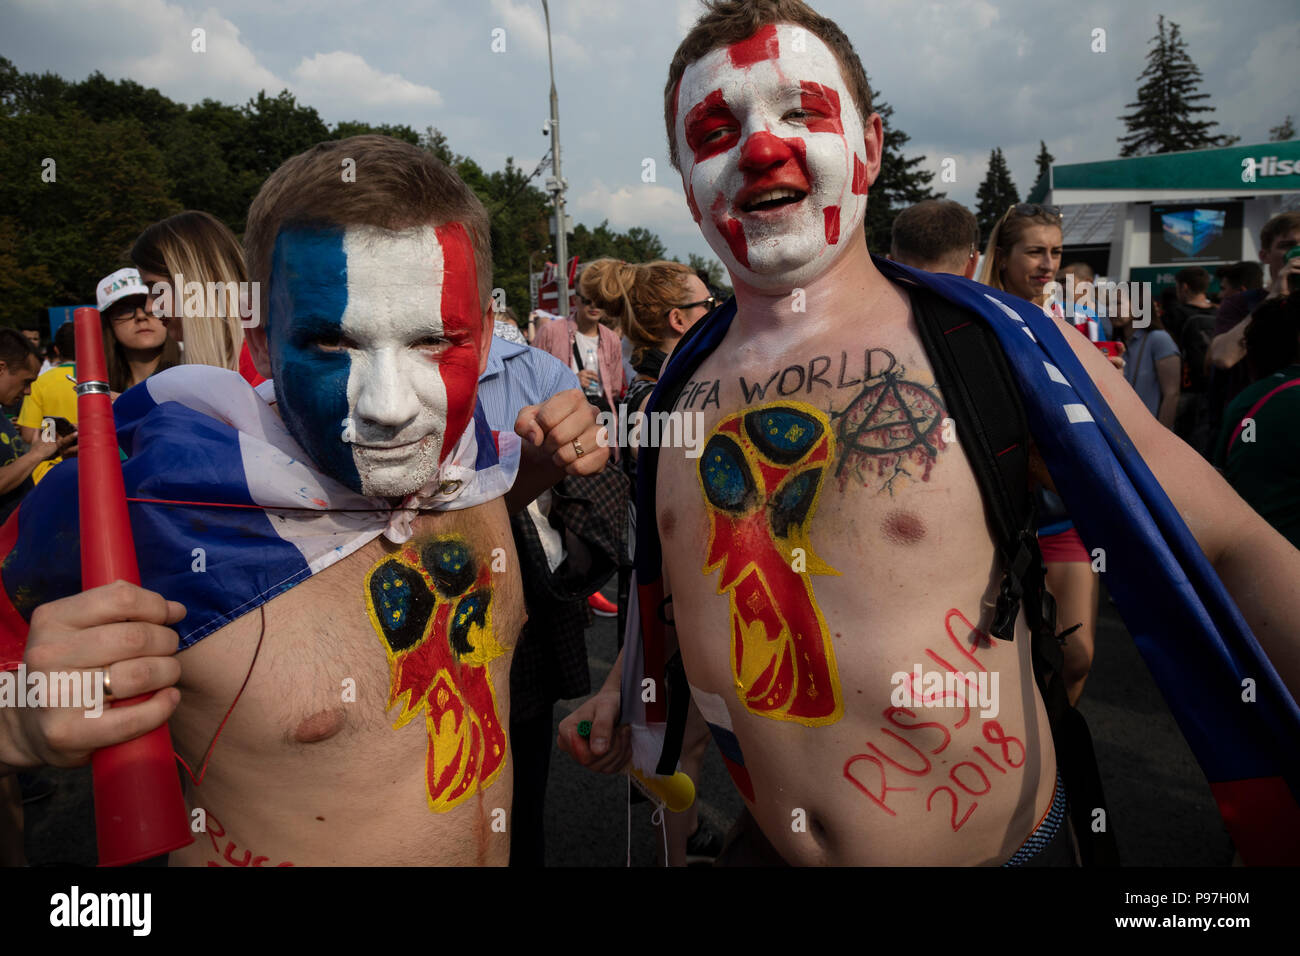 Moscou, Russie. 15, juillet 2018. Les fans de football français et croate cheer Fan festival de Moscou pendant la Coupe du Monde FIFA 2018, dernier match, la France contre la Croatie à Moscou Banque D'Images